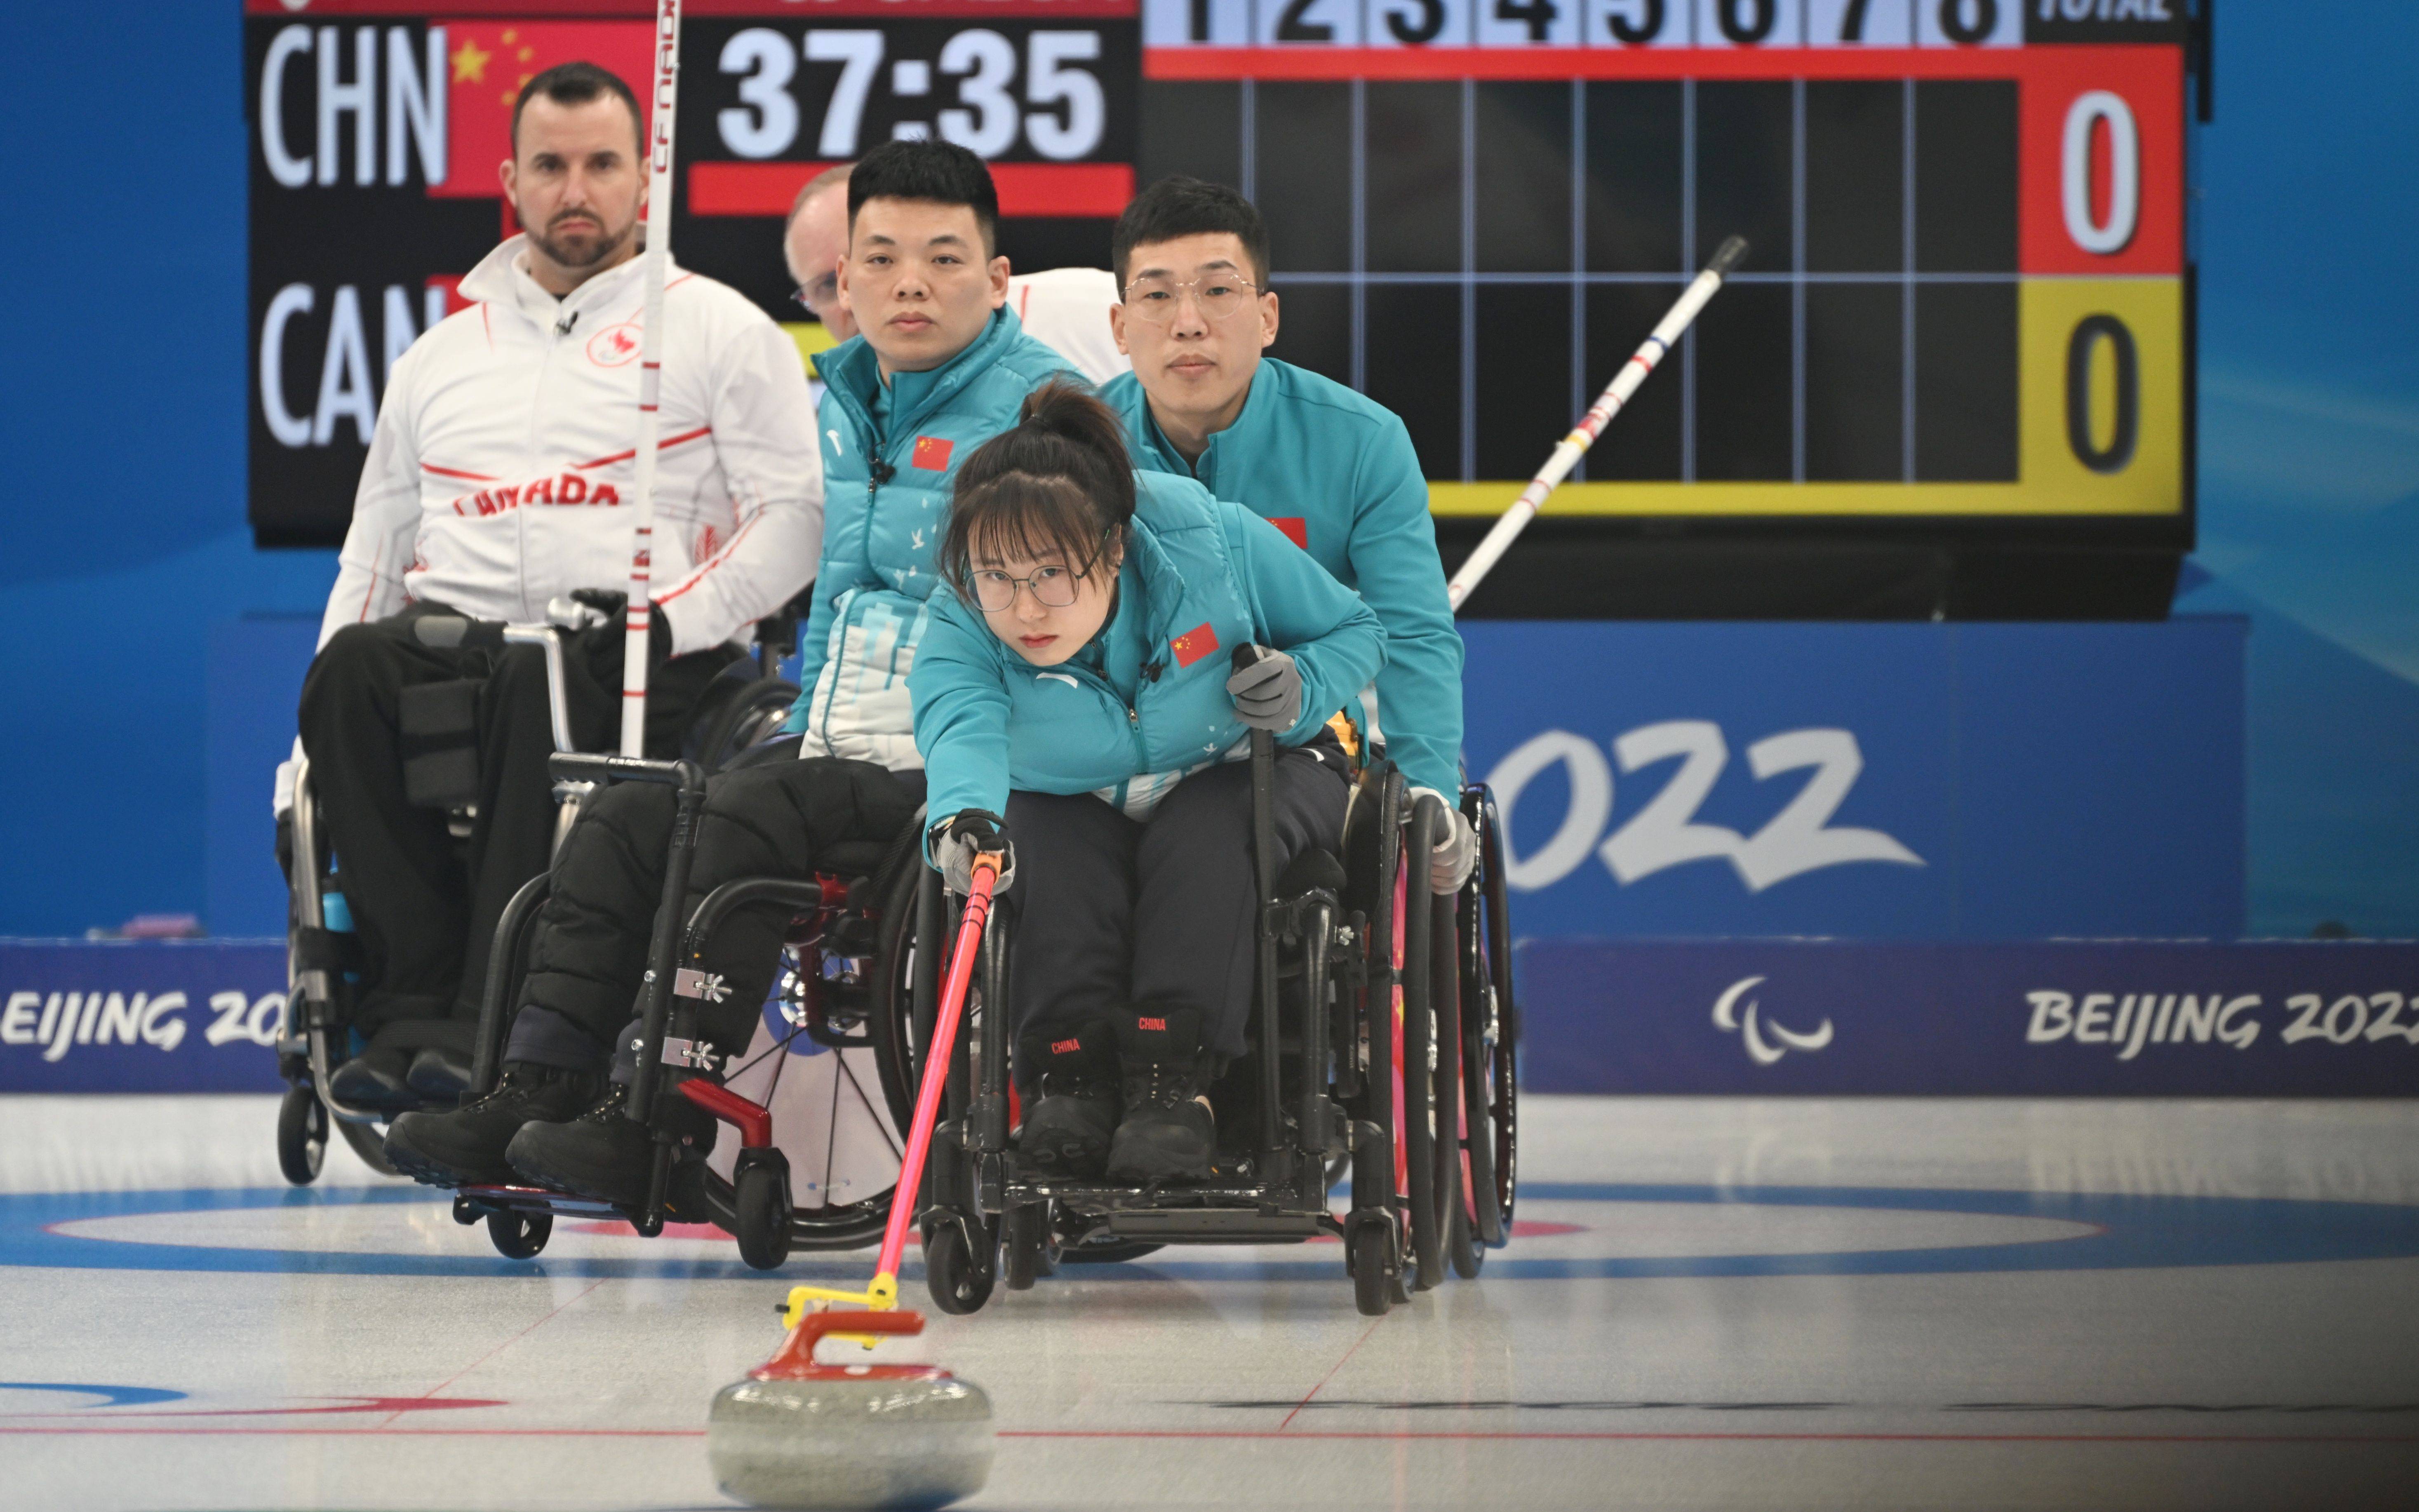 轮椅冰壶开始比赛 华夏队决胜盘3比7不敌加拿大队